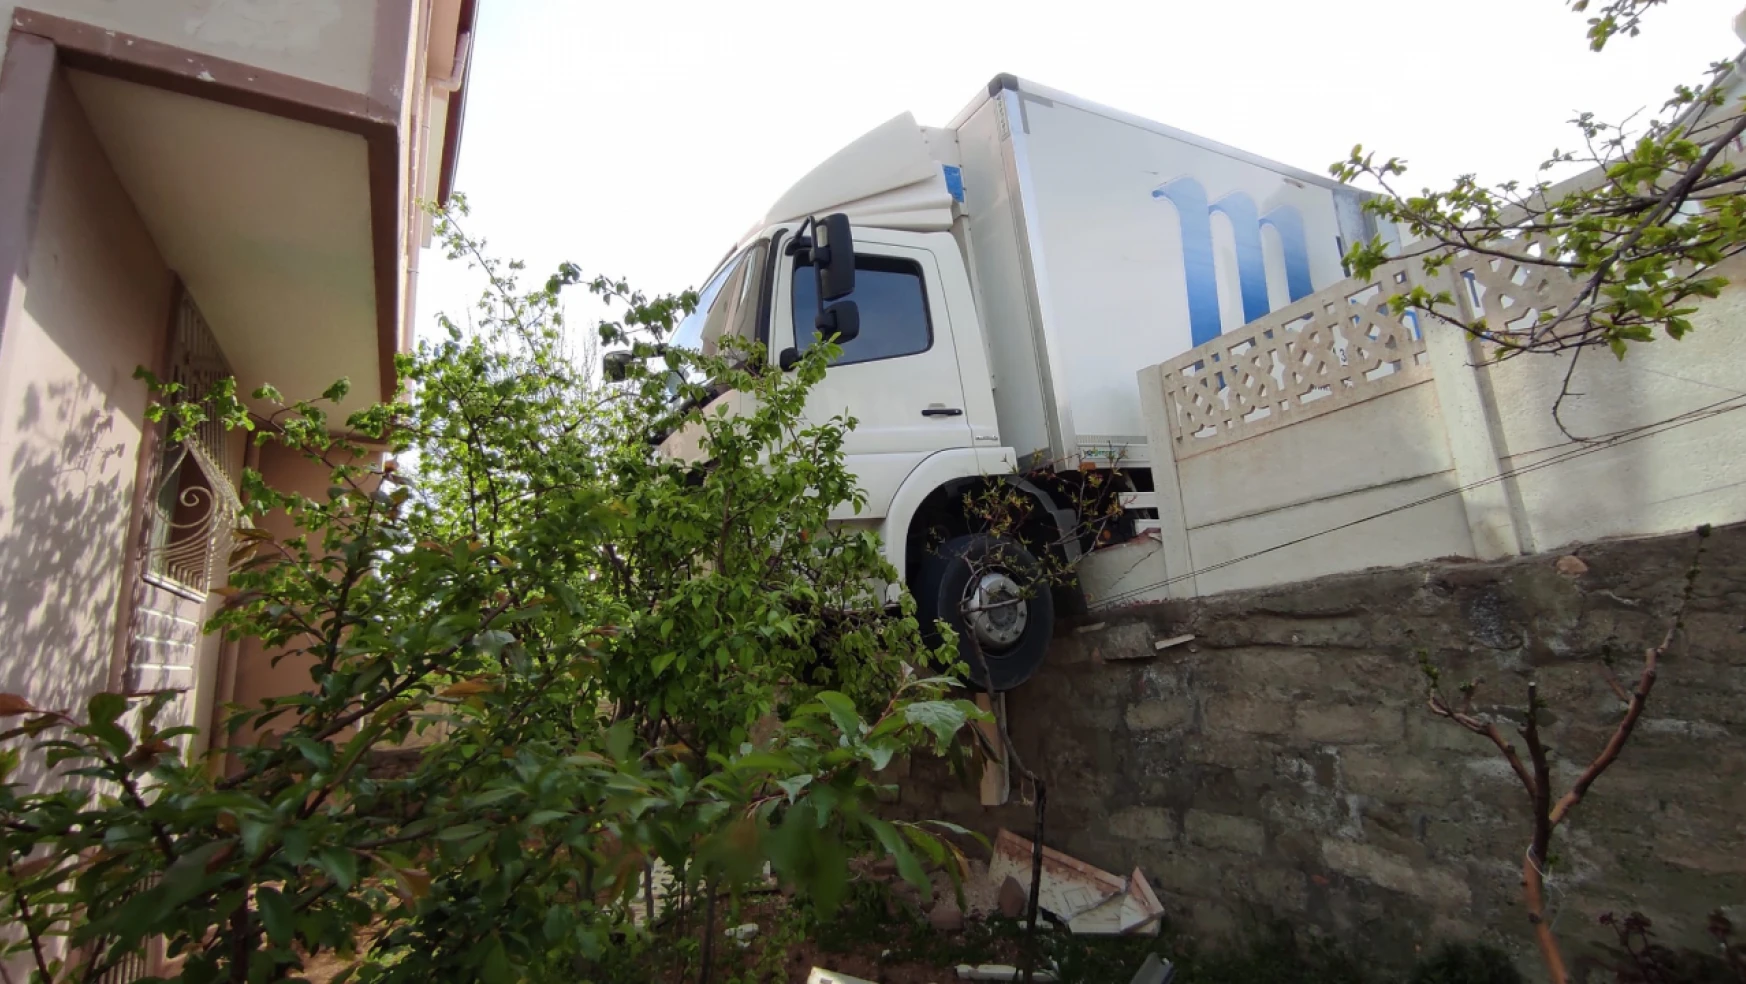 Elazığ'da kamyon evin bahçesine girdi